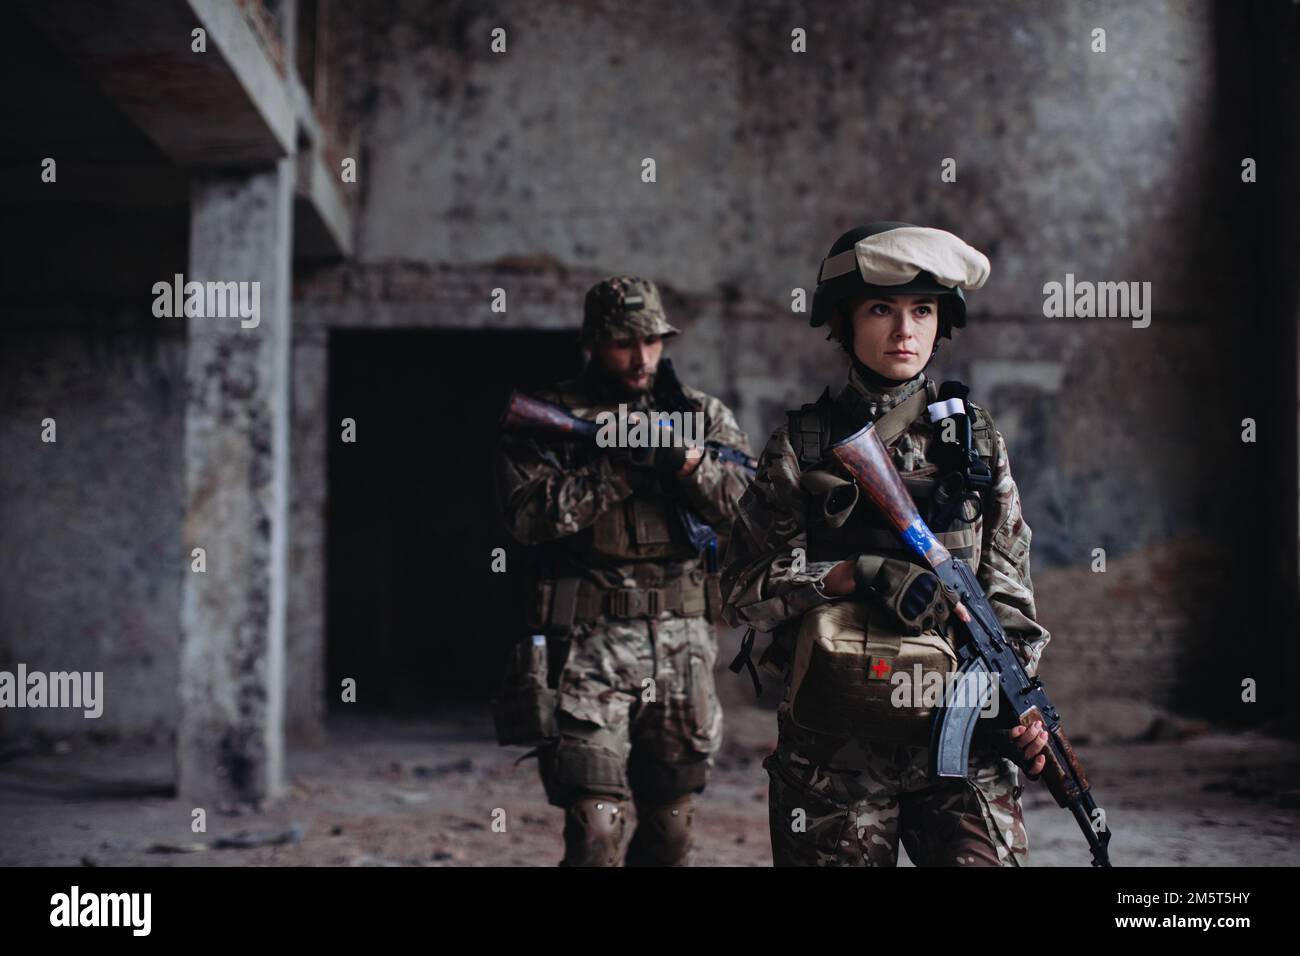 L'esercito ucraino sta difendendo le sue posizioni. Fratelli in armi uomo e donna in guerra. Foto Stock